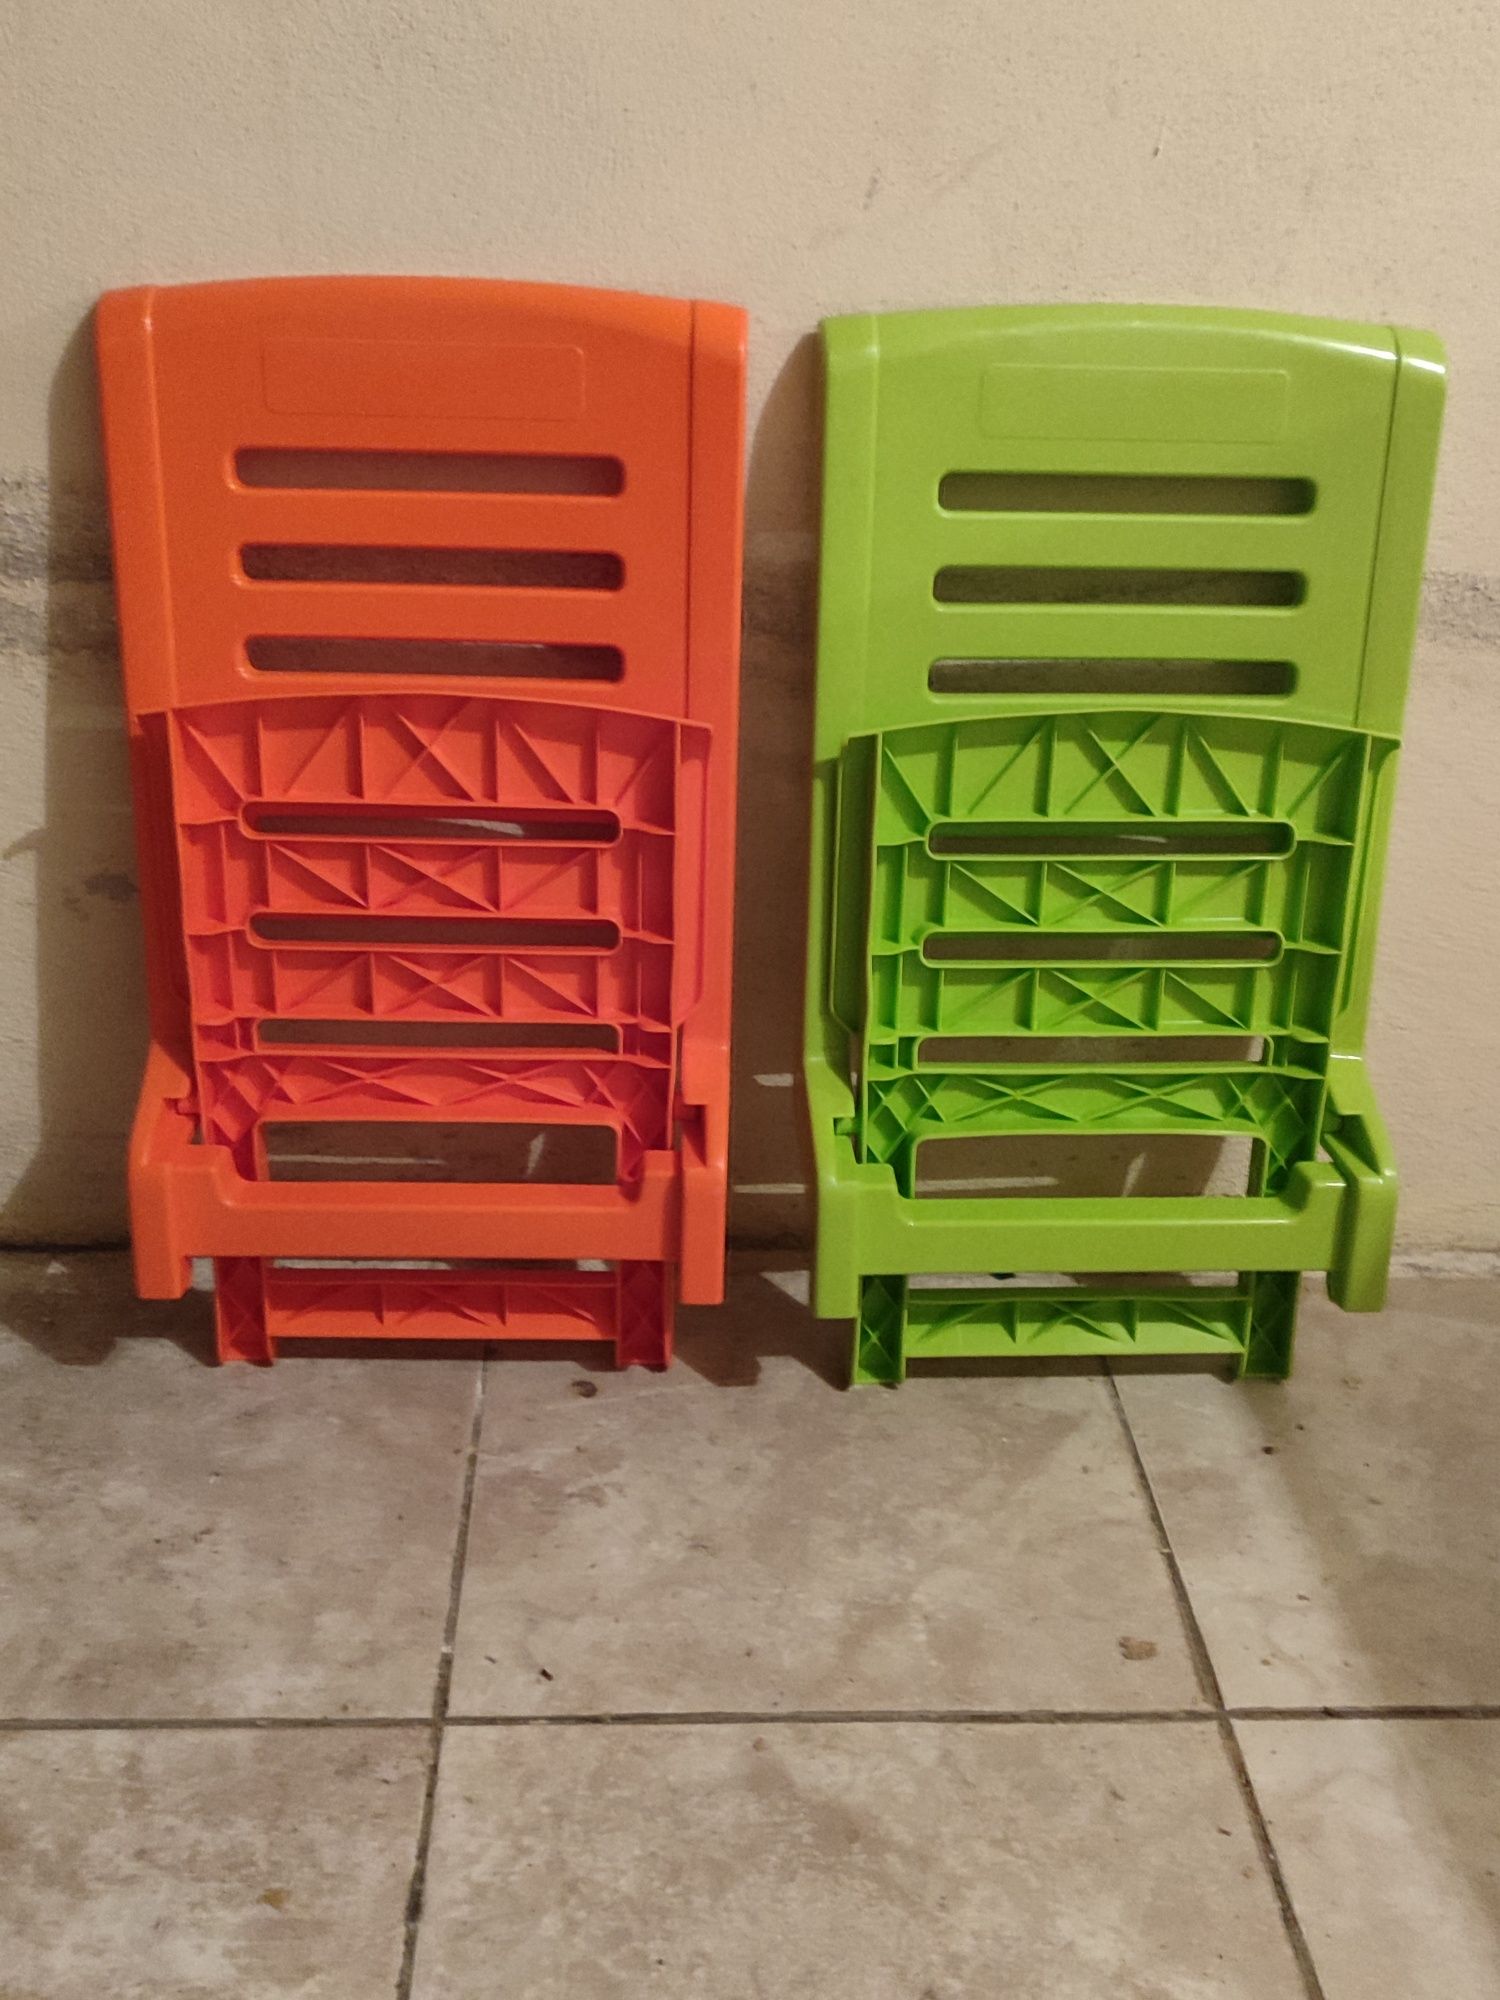 Duas cadeiras de plástico